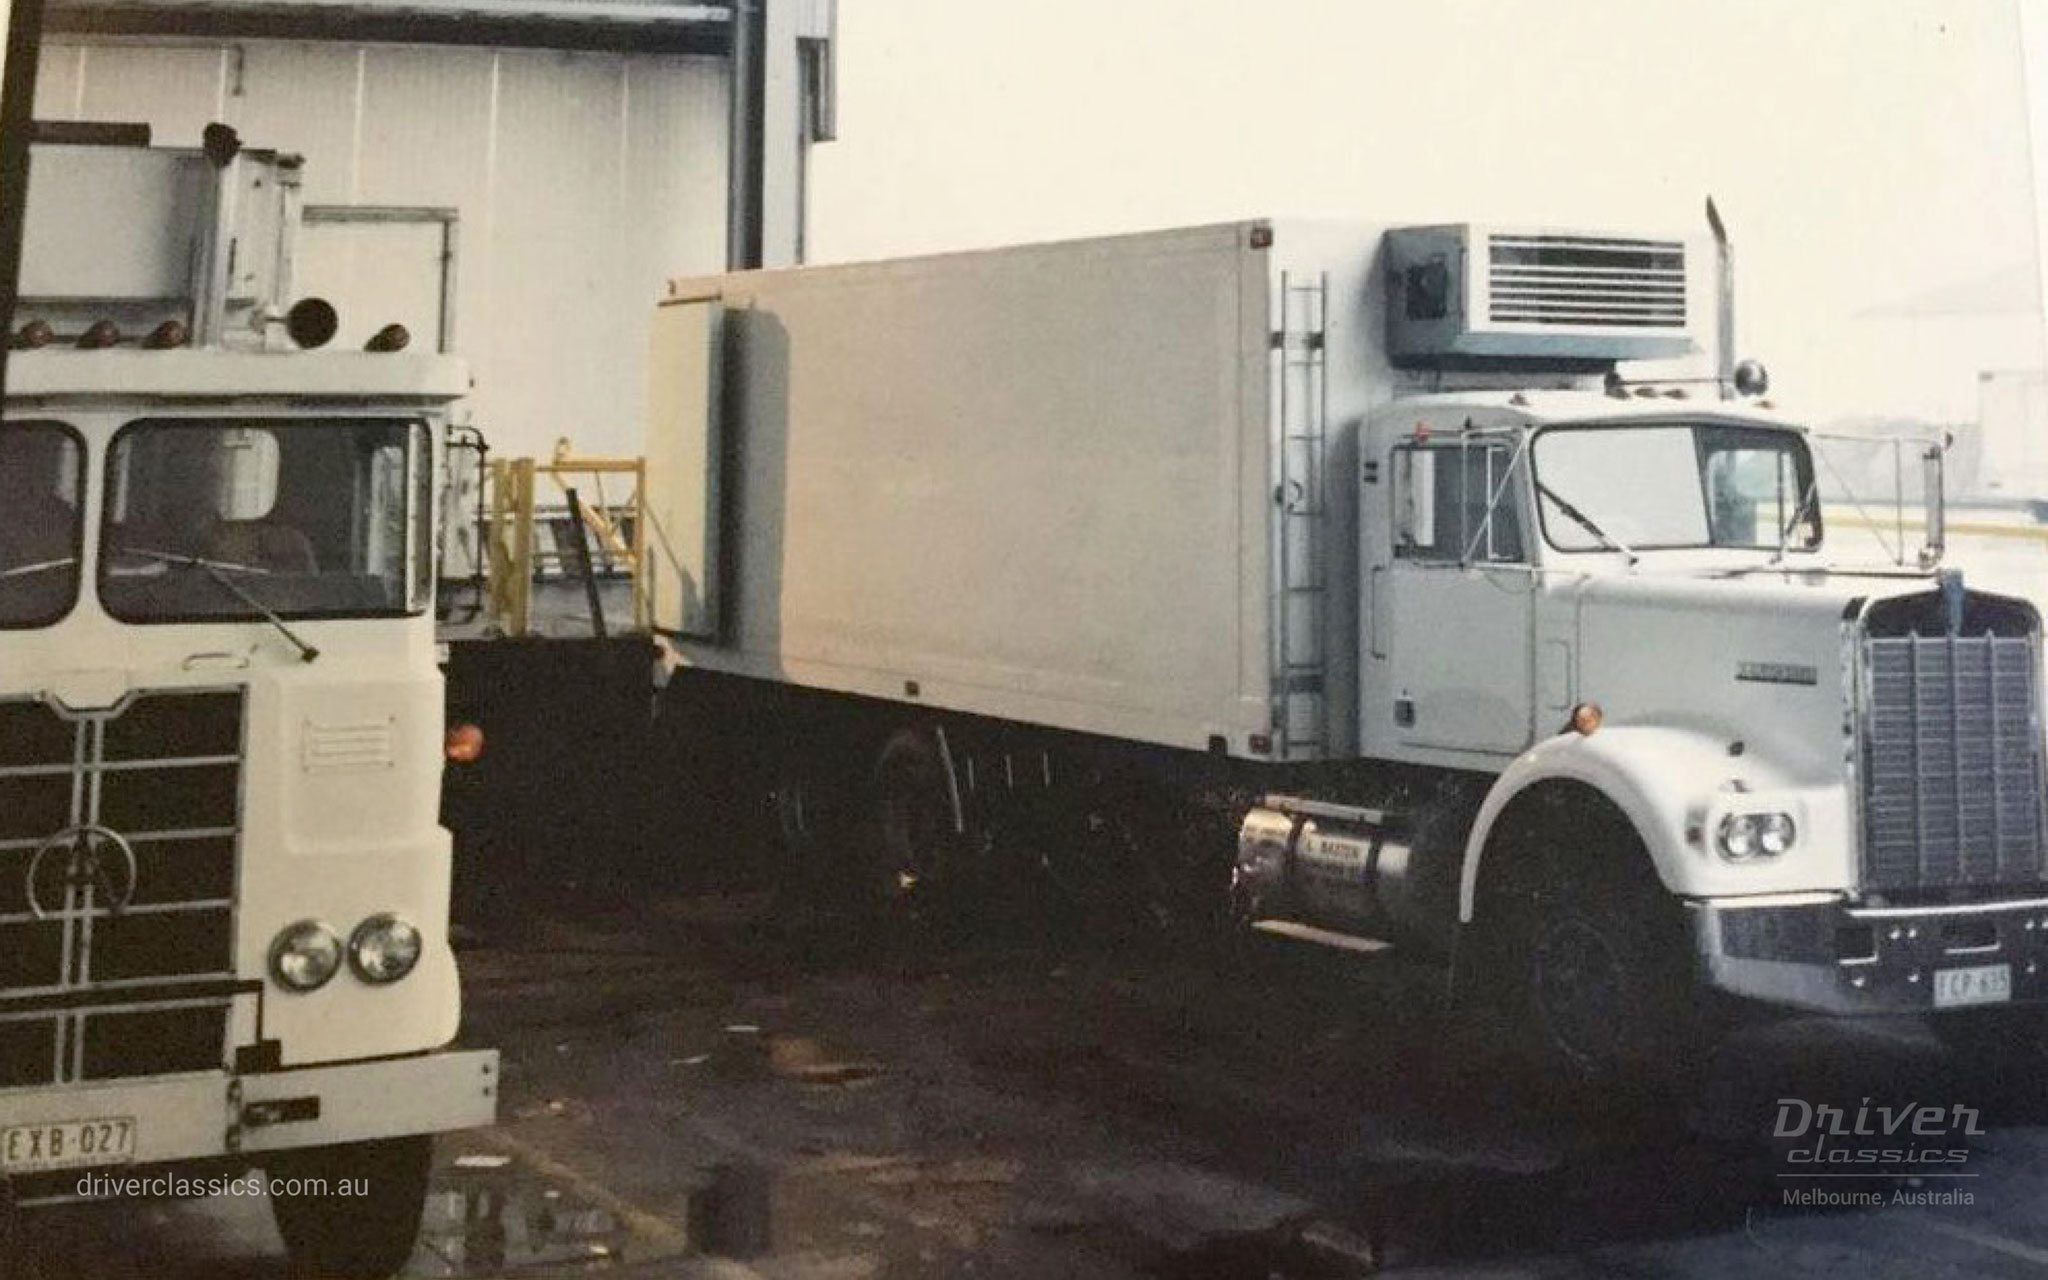 Kenworth W925 S2R truck (1977 model) next to an Atkinson truck. Photo taken at Preston, 1992